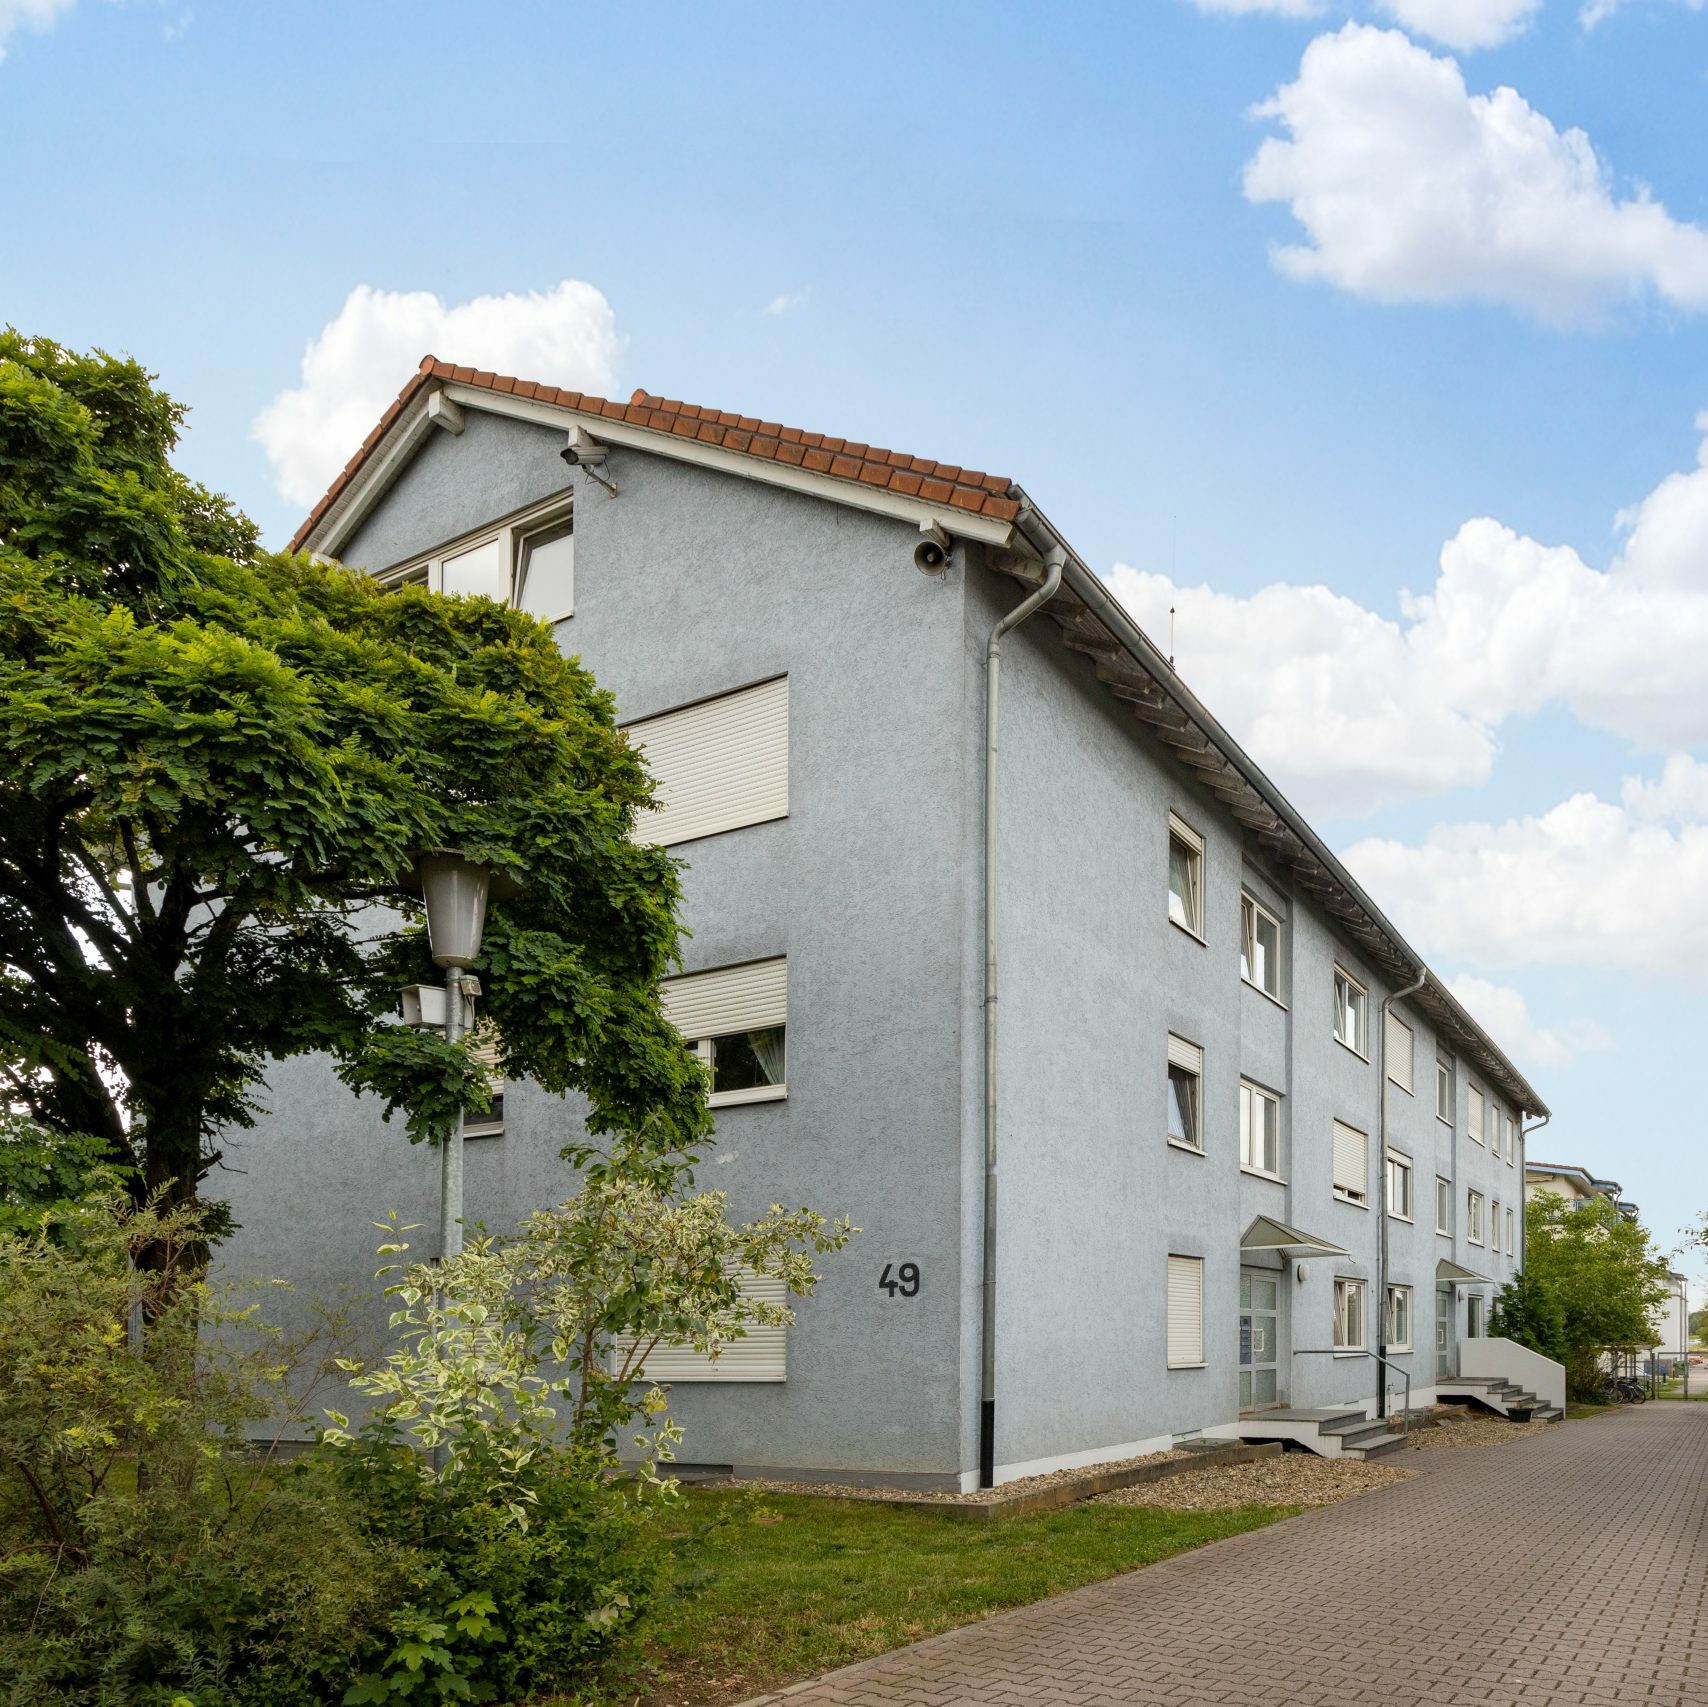 Noratis kauft Immobilienbestand Bensheim Rhein-Main-Gebiet